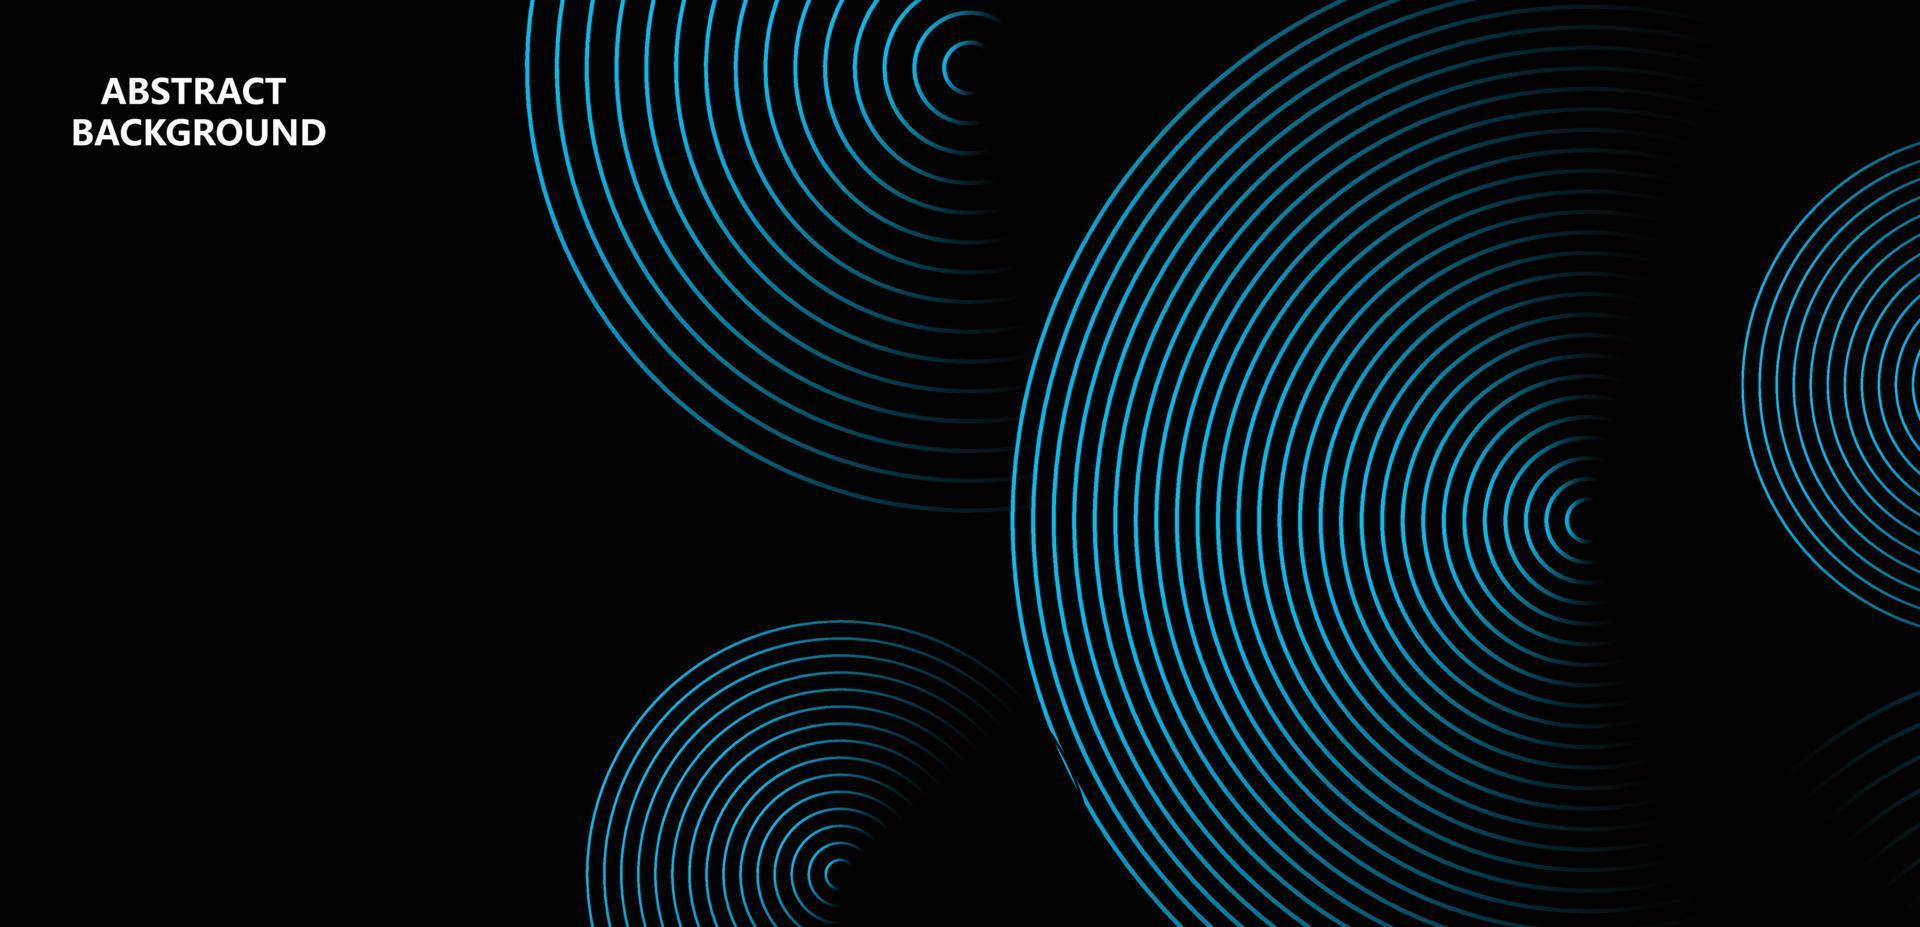 lignes de cercle rougeoyantes abstraites sur fond sombre. concept de technologie futuriste. modèle de bannière horizontale. costume pour affiche, couverture, bannière, brochure, site web vecteur